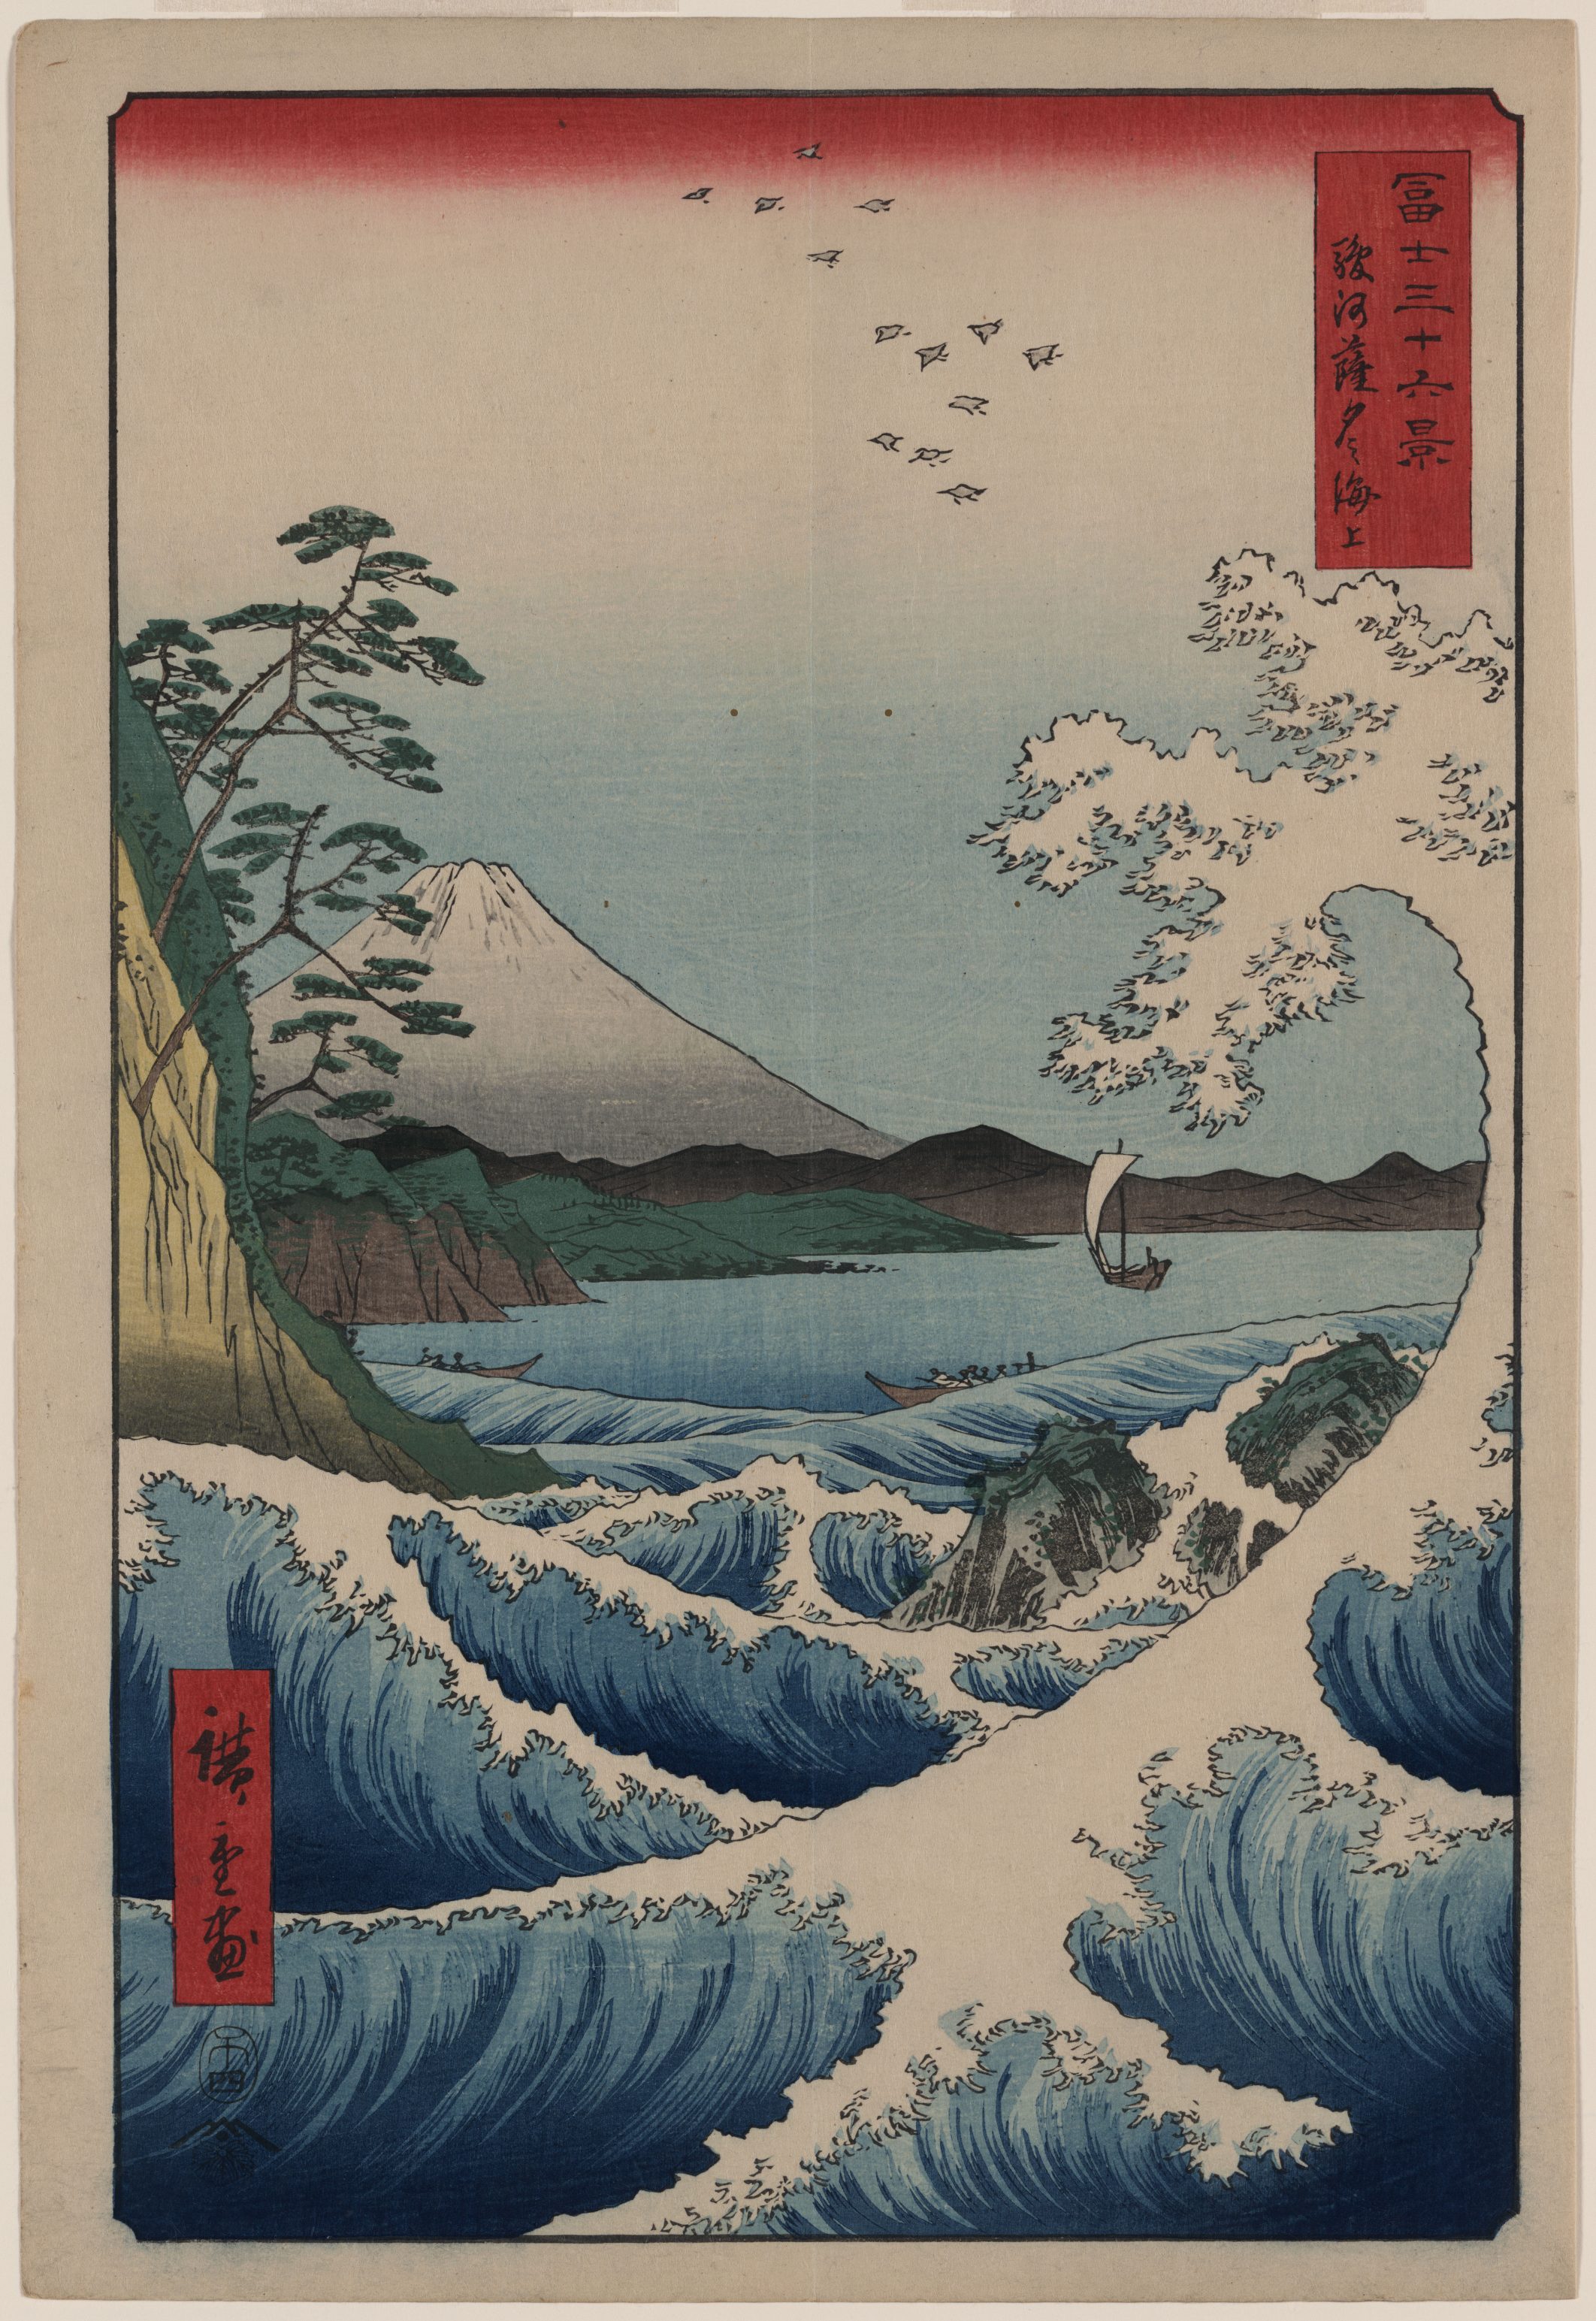 Obra artística de Hiroshige, maestro del ukiyo-e japonés